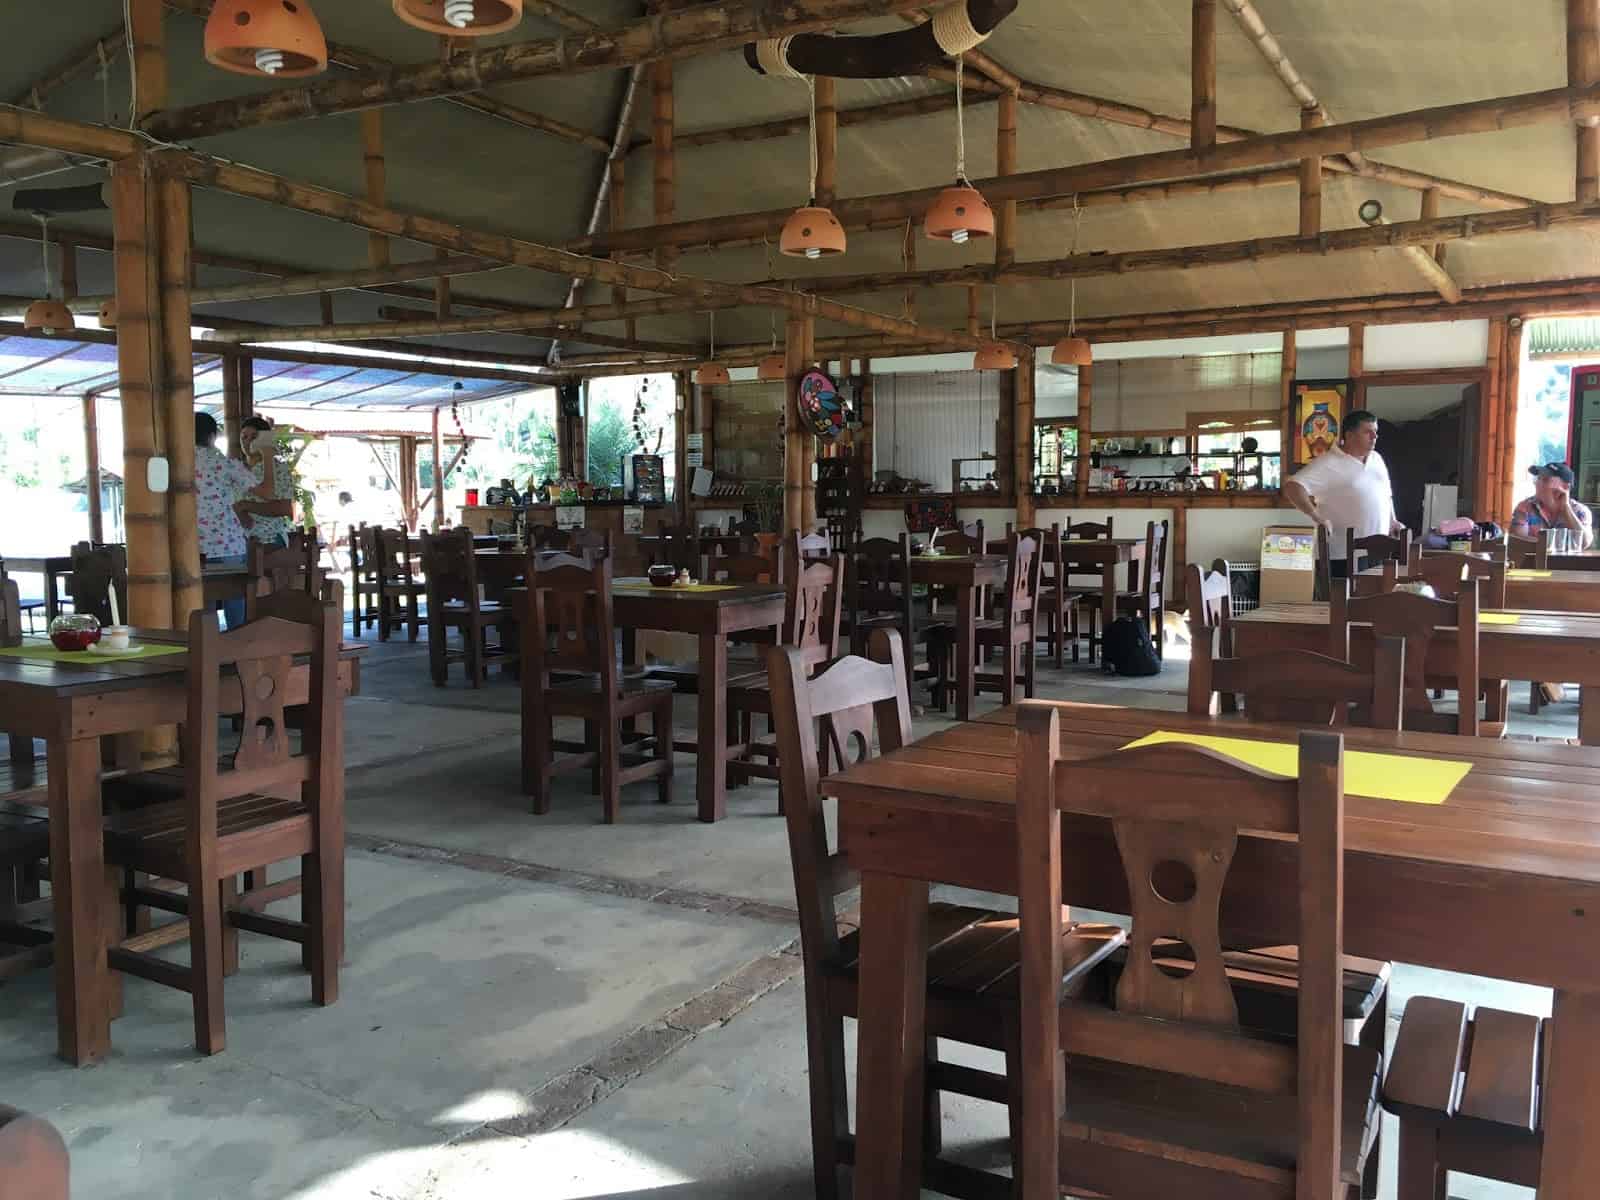 Restaurant at San Juan del Valle in Belén de Umbría, Risaralda, Colombia